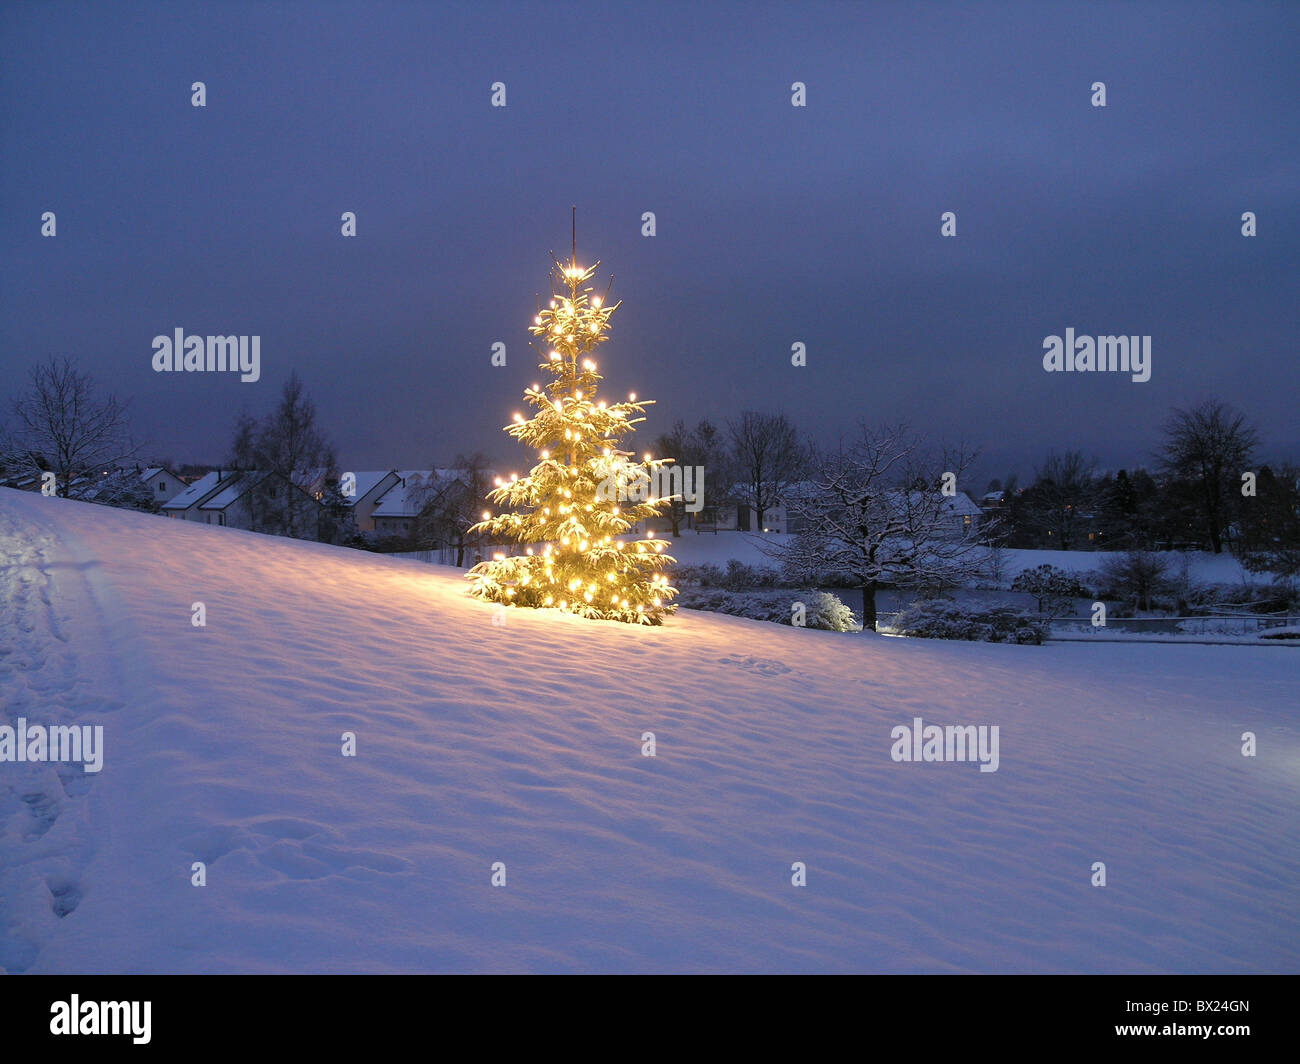 at night Christmas Christmas tree christmas tree fir tree lighting illuminated night outside snow Switzerl Stock Photo